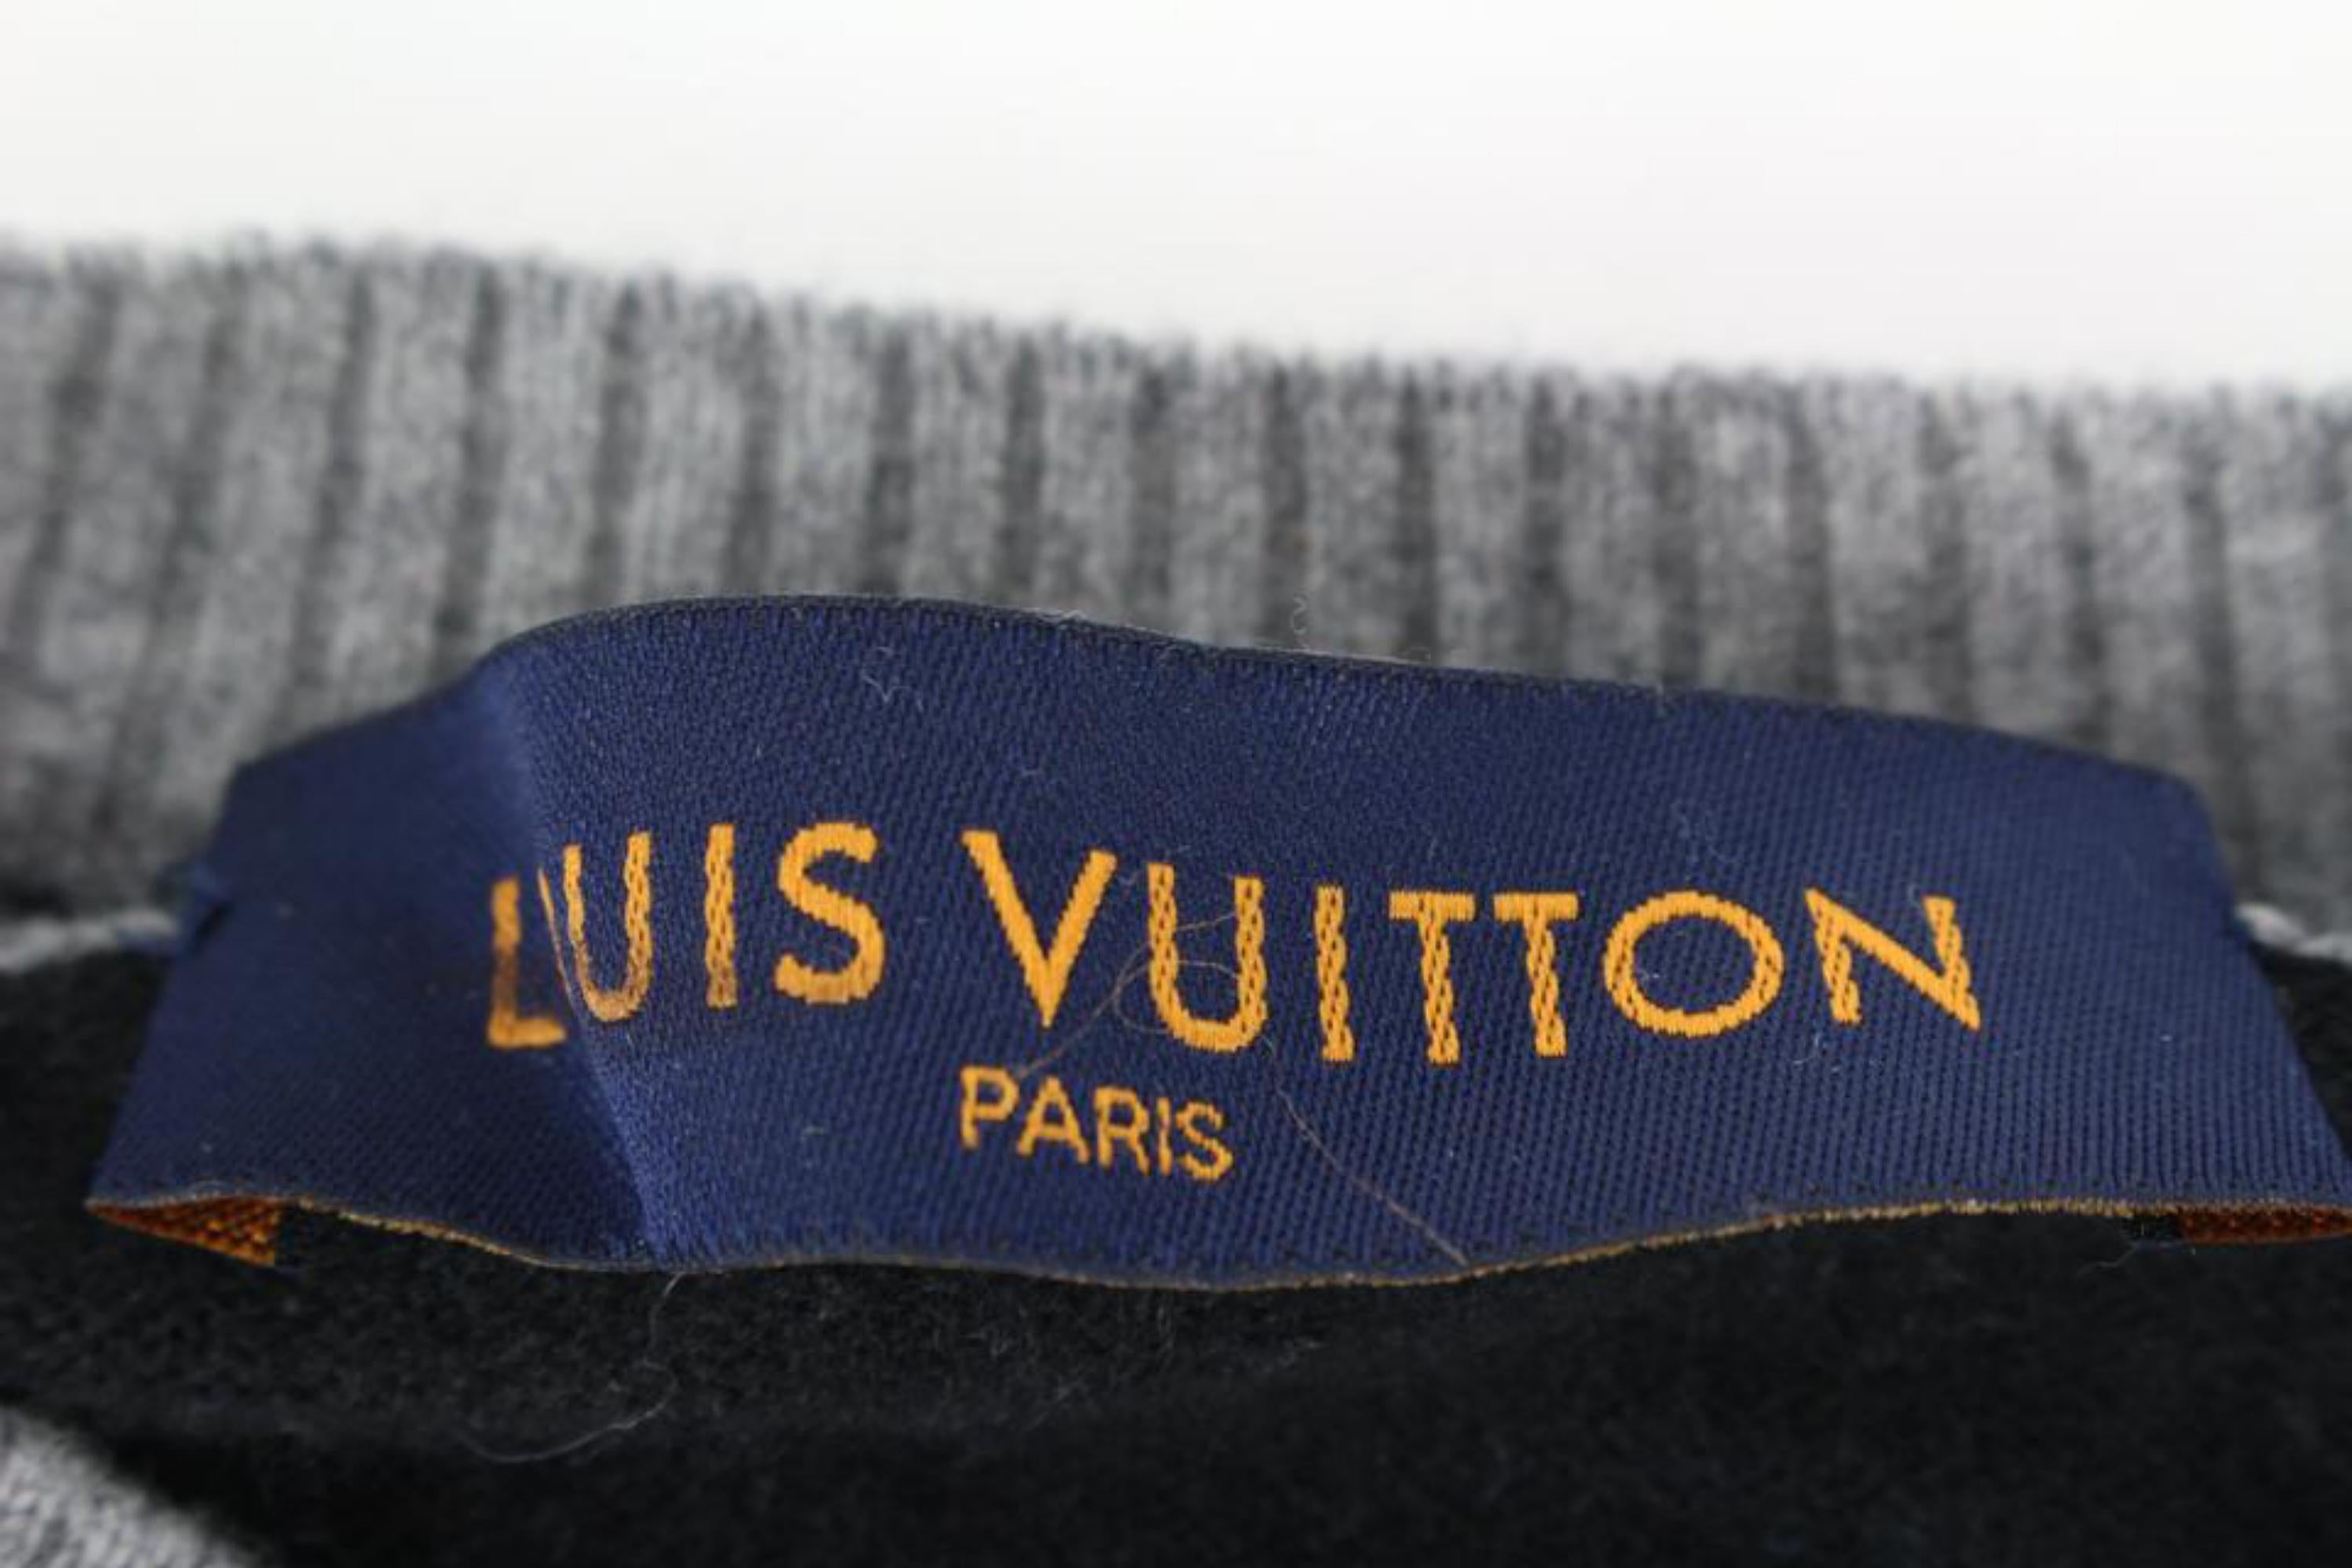 Louis Vuitton VIrgil Abloh Black x Blue Long Sleeve Sweater Shirt 3lz526s For Sale 1